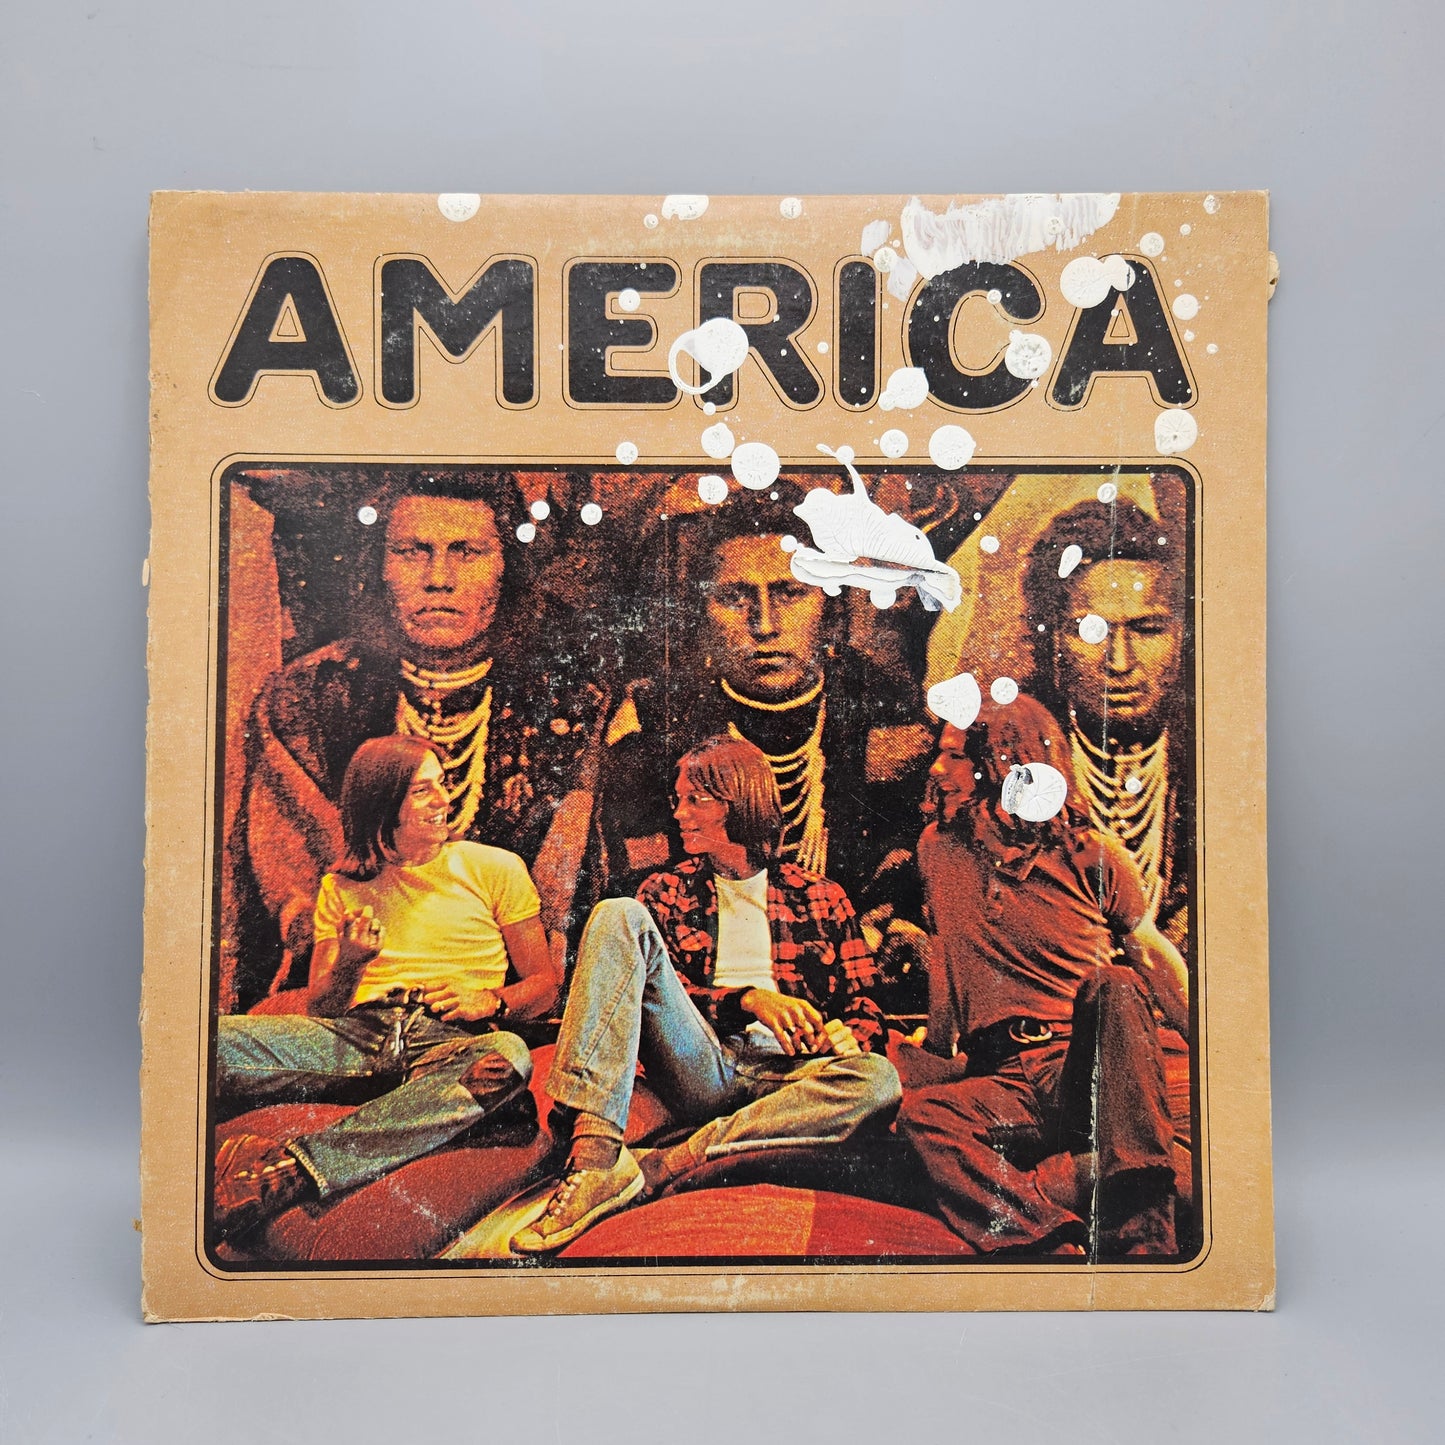 Vintage America Self Titled Warner Bros. LP Record